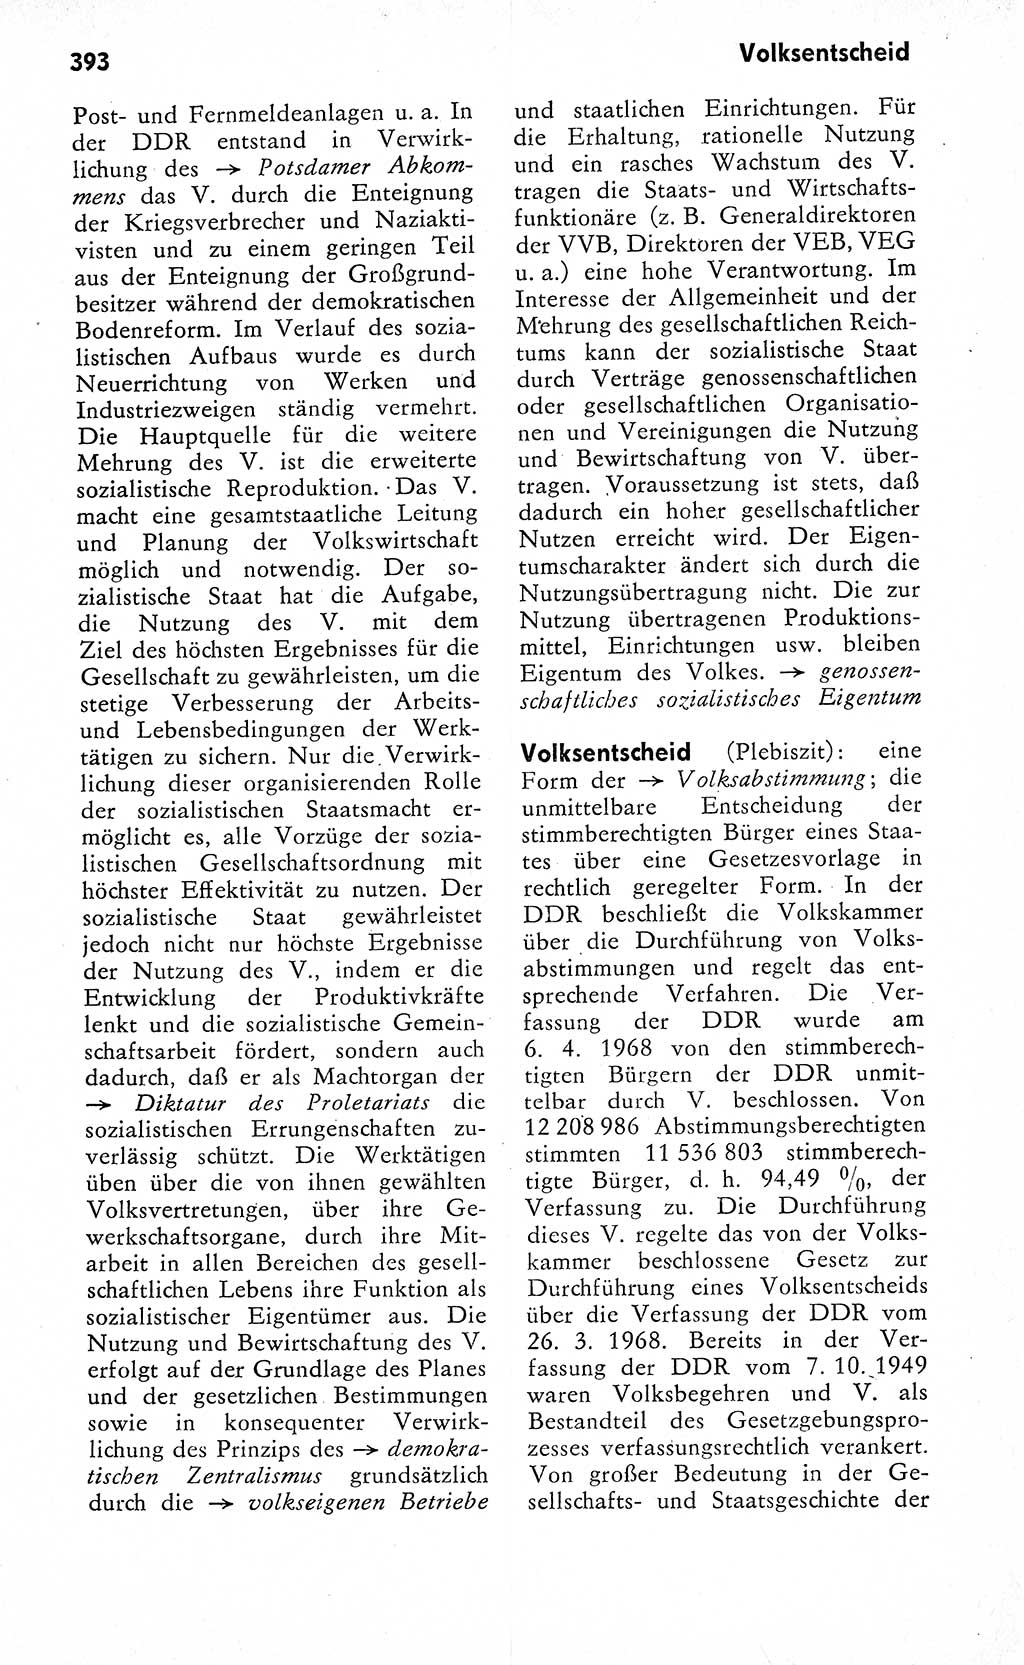 Wörterbuch zum sozialistischen Staat [Deutsche Demokratische Republik (DDR)] 1974, Seite 393 (Wb. soz. St. DDR 1974, S. 393)